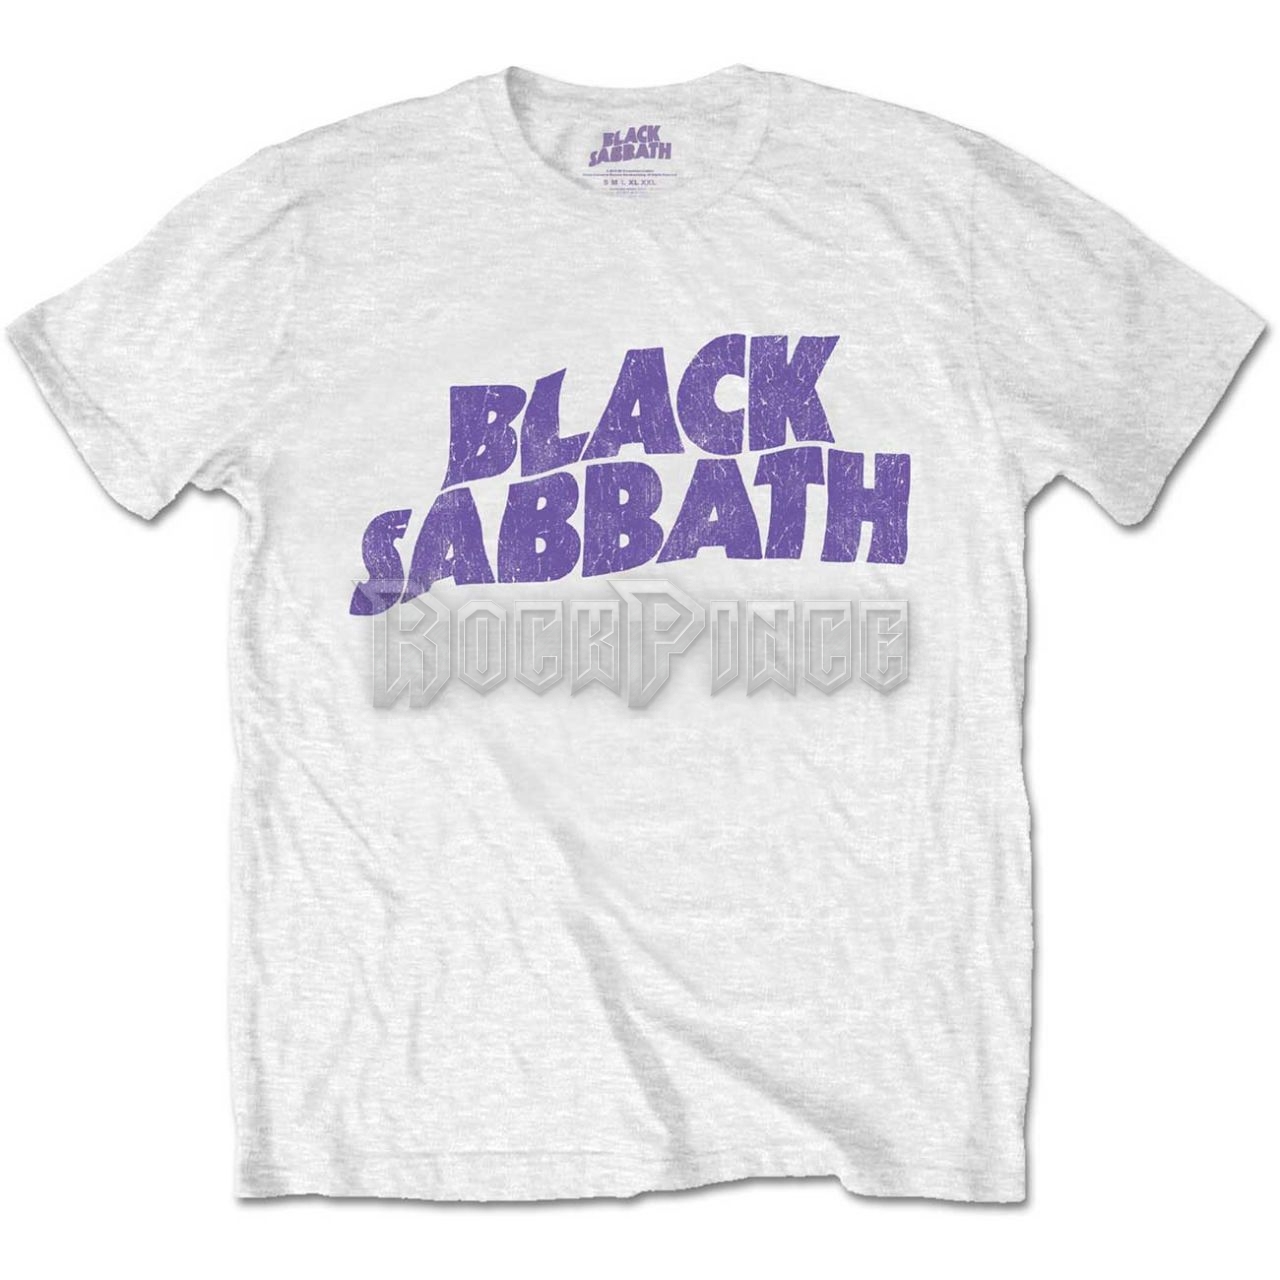 Black Sabbath - Wavy Logo - gyerek póló - BSTSP04BW